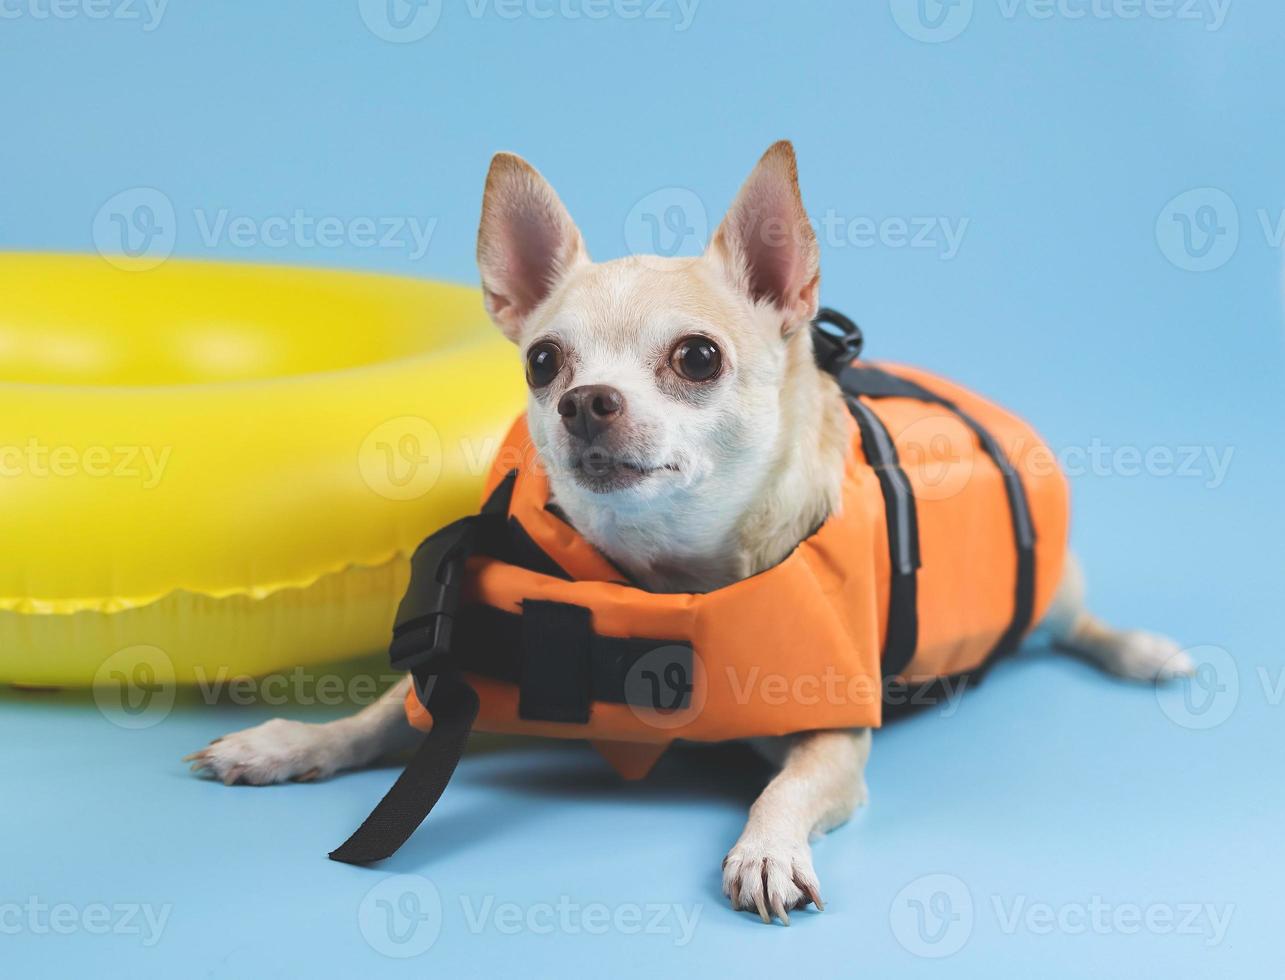 mignon chien chihuahua brun à cheveux courts portant un gilet de sauvetage orange ou un gilet de sauvetage allongé près d'un anneau de natation jaune, isolé sur fond bleu. photo